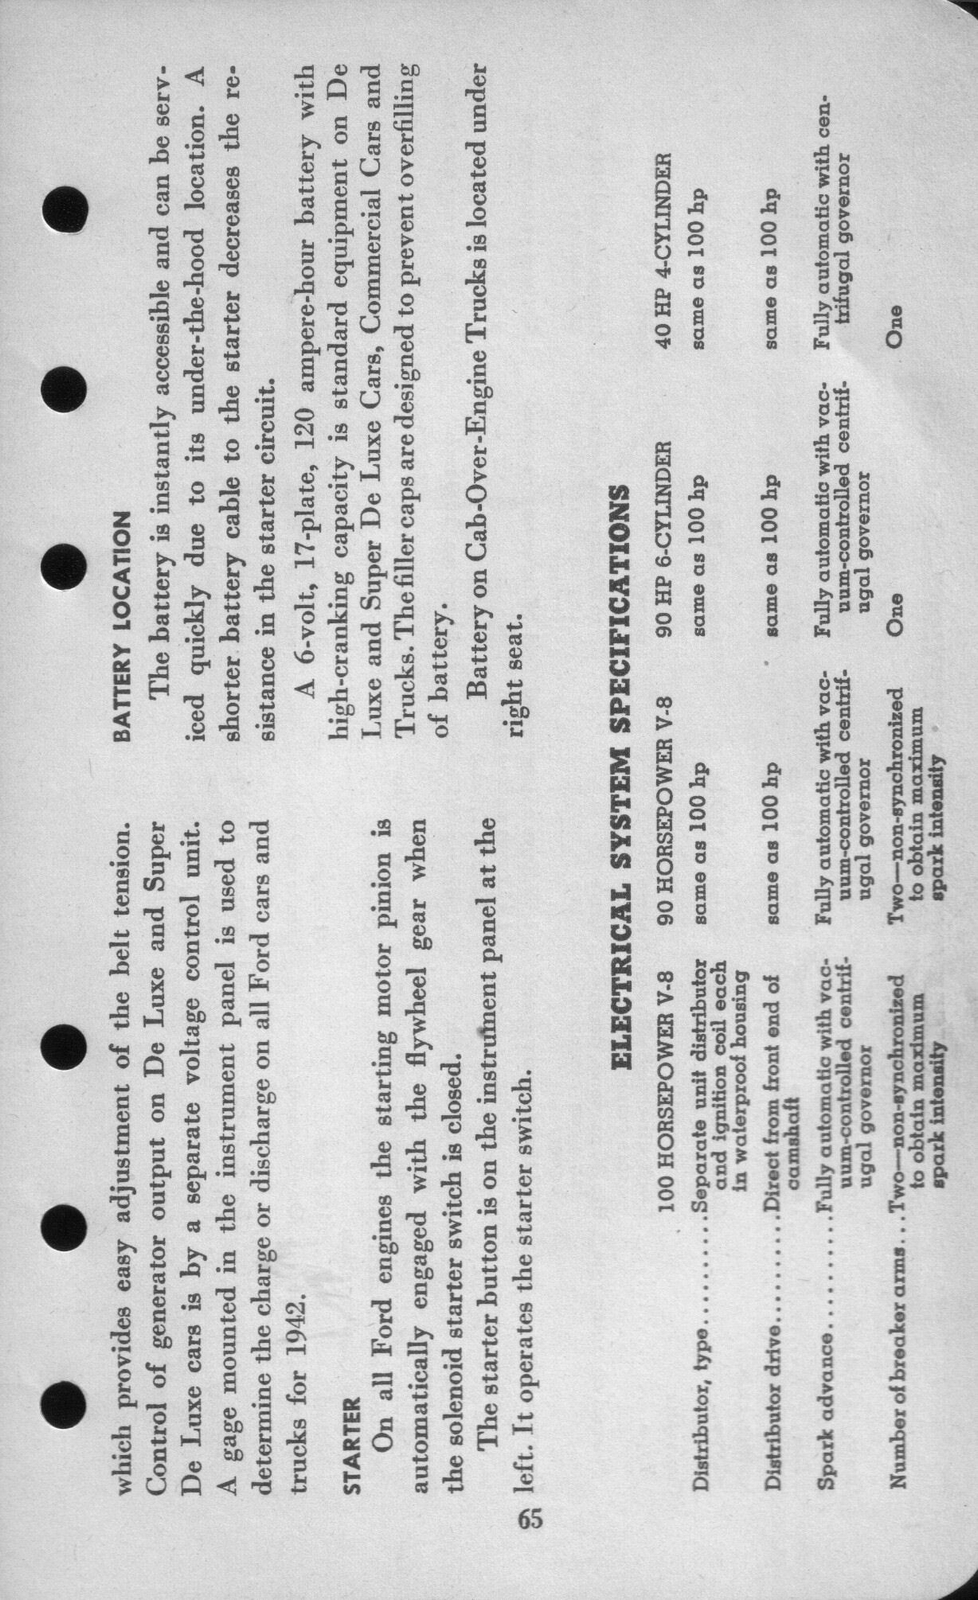 n_1942 Ford Salesmans Reference Manual-065.jpg